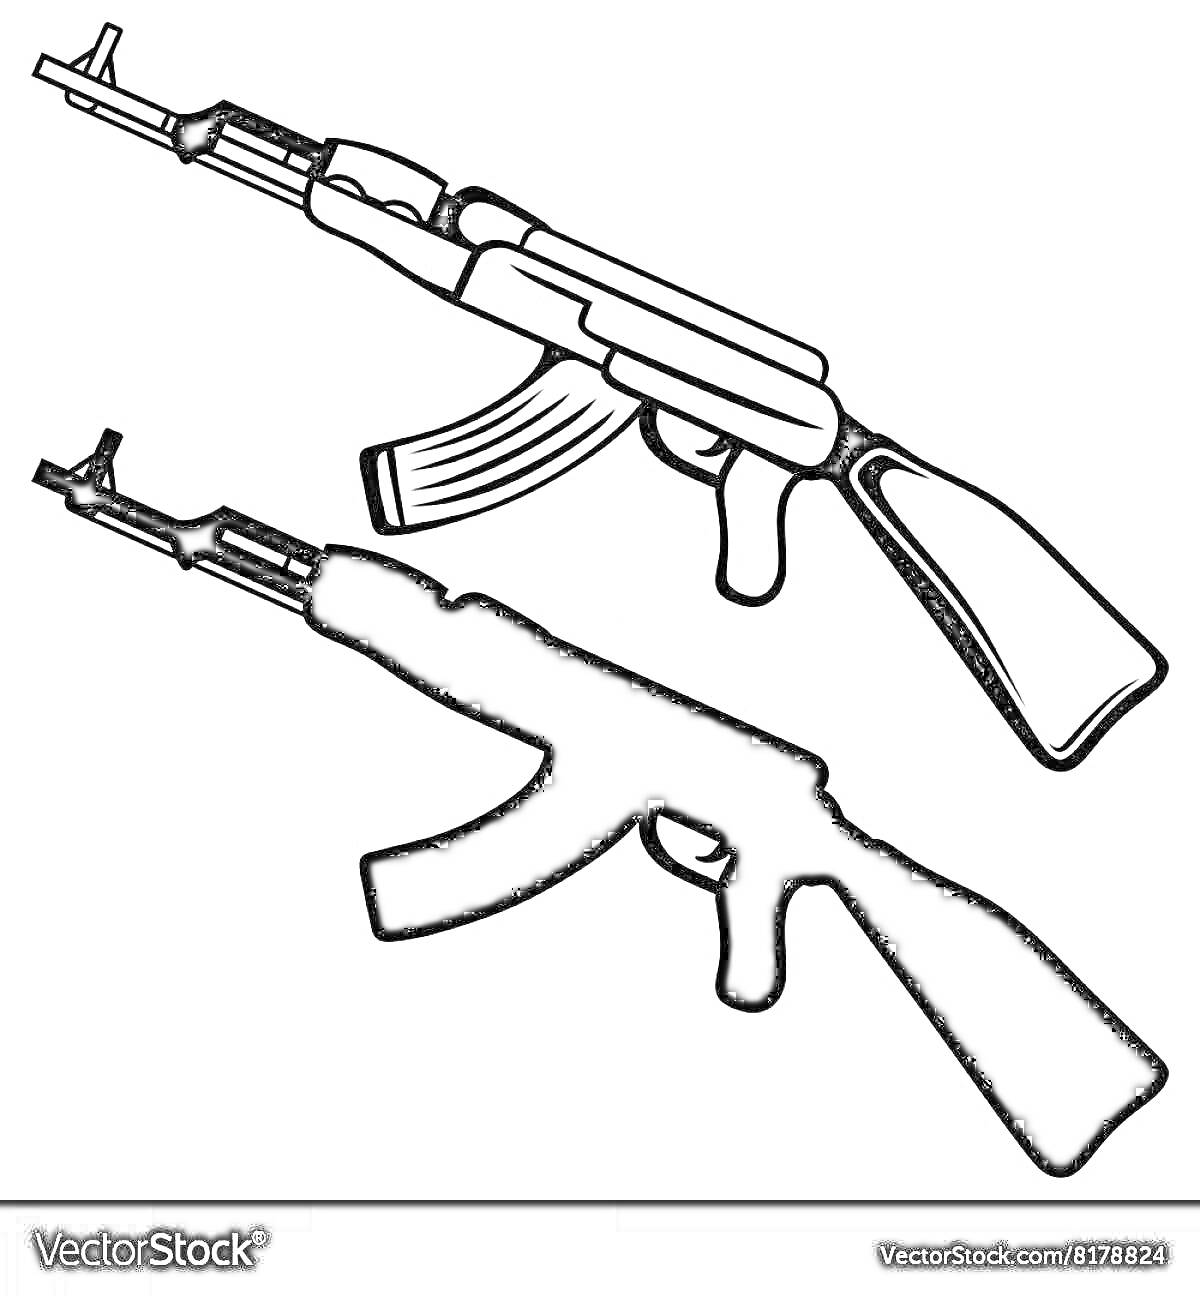 Раскраска Два изображения АК-47, одно с контуром, другое полностью залитое черным